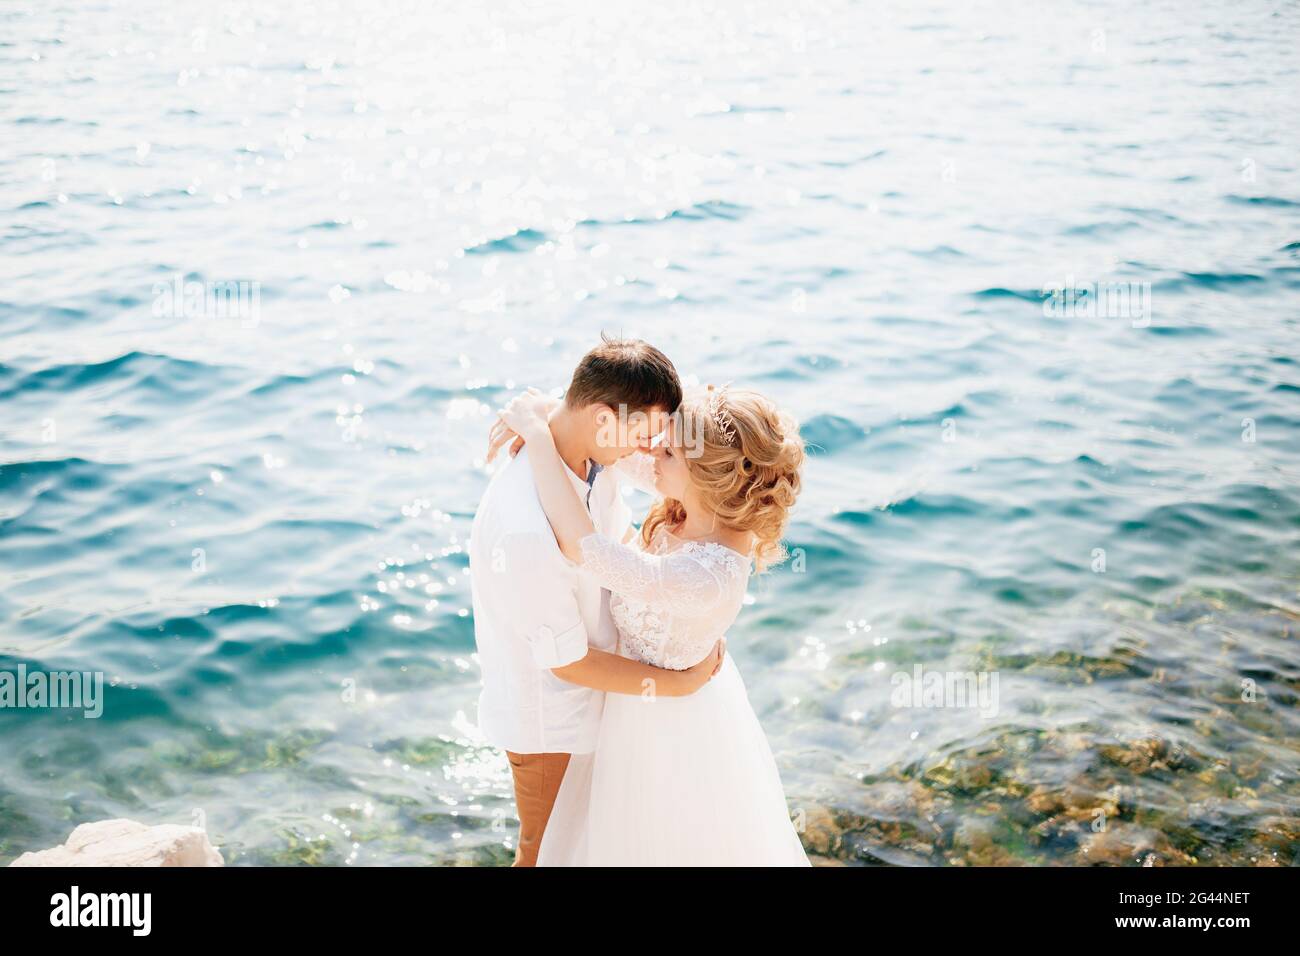 La mariée et le marié s'embrassent sur le rivage rocheux et sont sur le point de baiser Banque D'Images